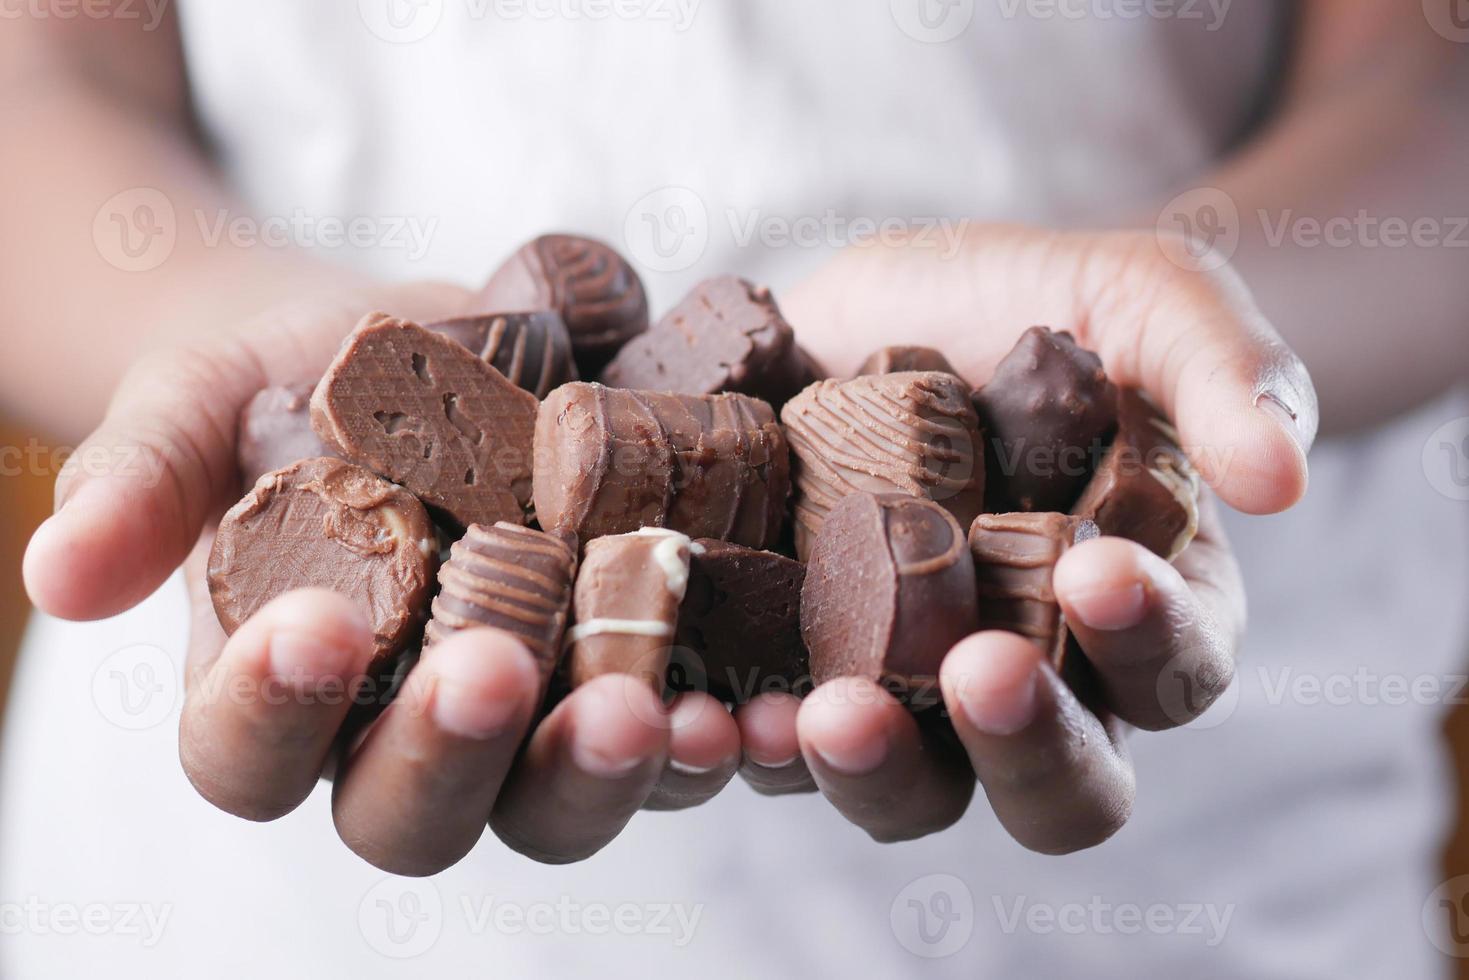 https://static.vecteezy.com/ti/photos-gratuite/p1/8260296-tenant-beaucoup-de-bonbons-au-chocolat-noir-gros-plan-photo.jpg